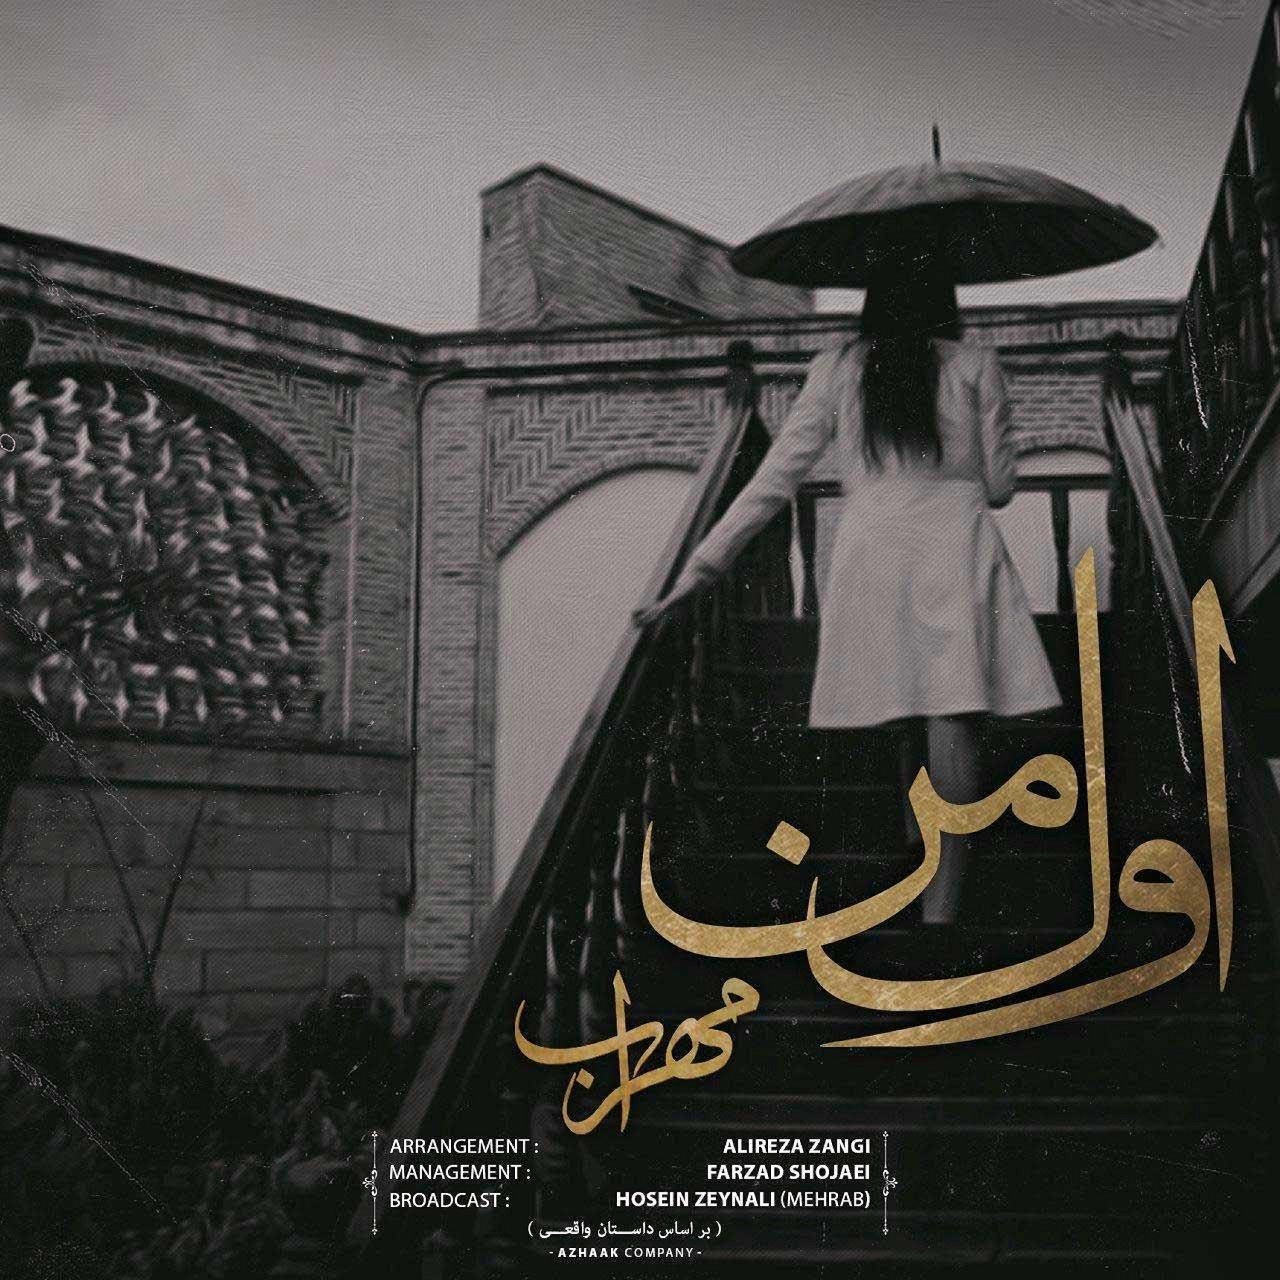  دانلود آهنگ جدید مهراب - اول من | Download New Music By Mehrab - Avval Man (feat. Farzad Shojaei & Pasha)